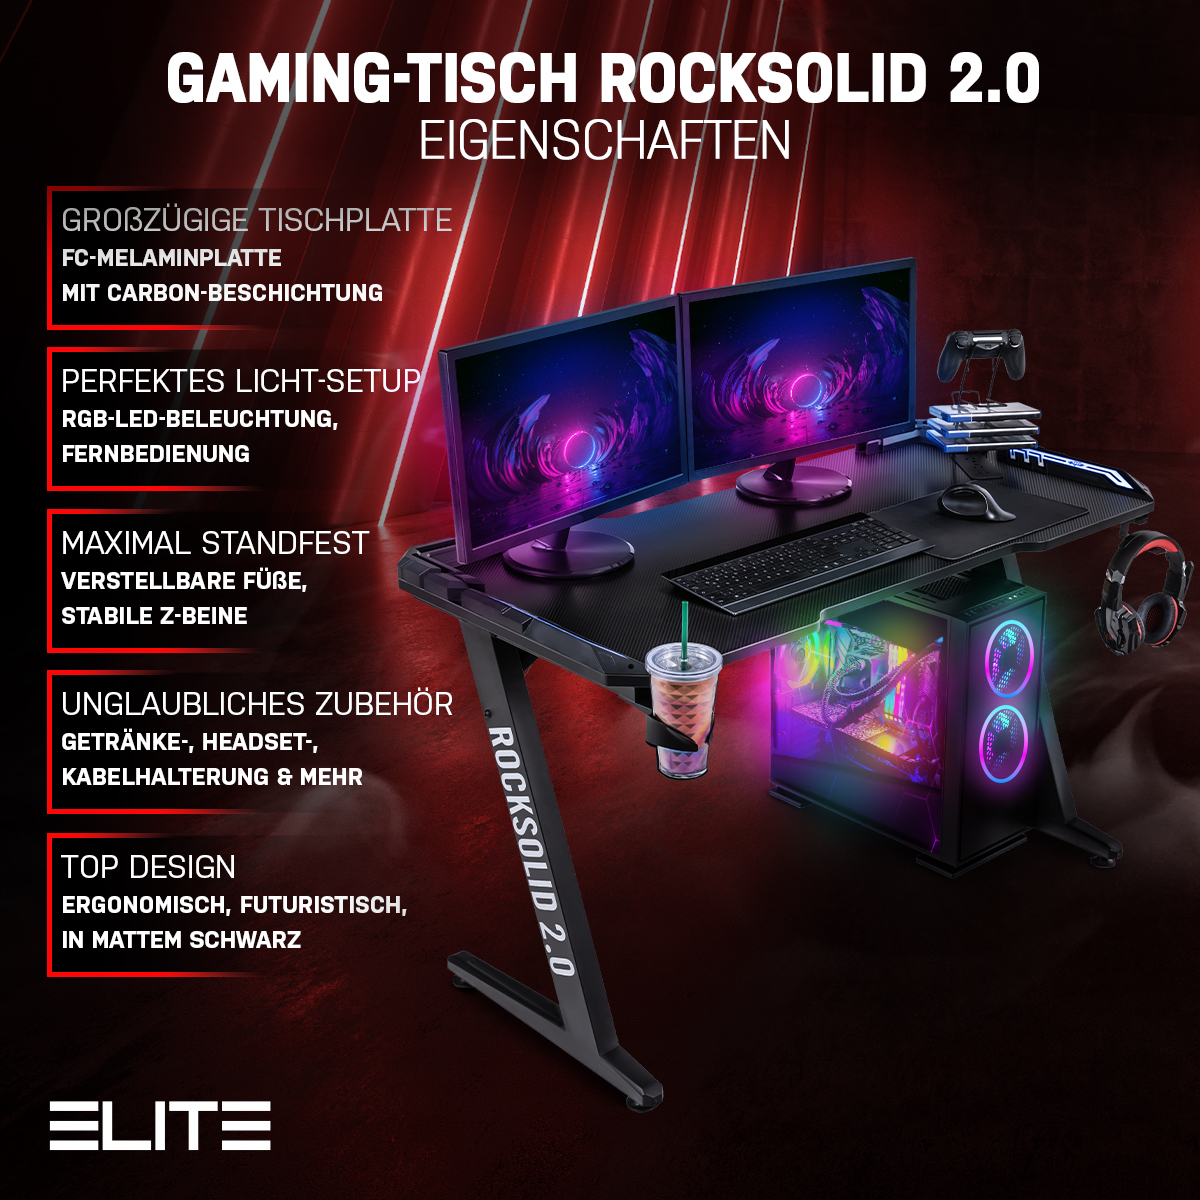 Infinity RGB-Beine Gamingtisch 2.0 Rocksolid ELITE